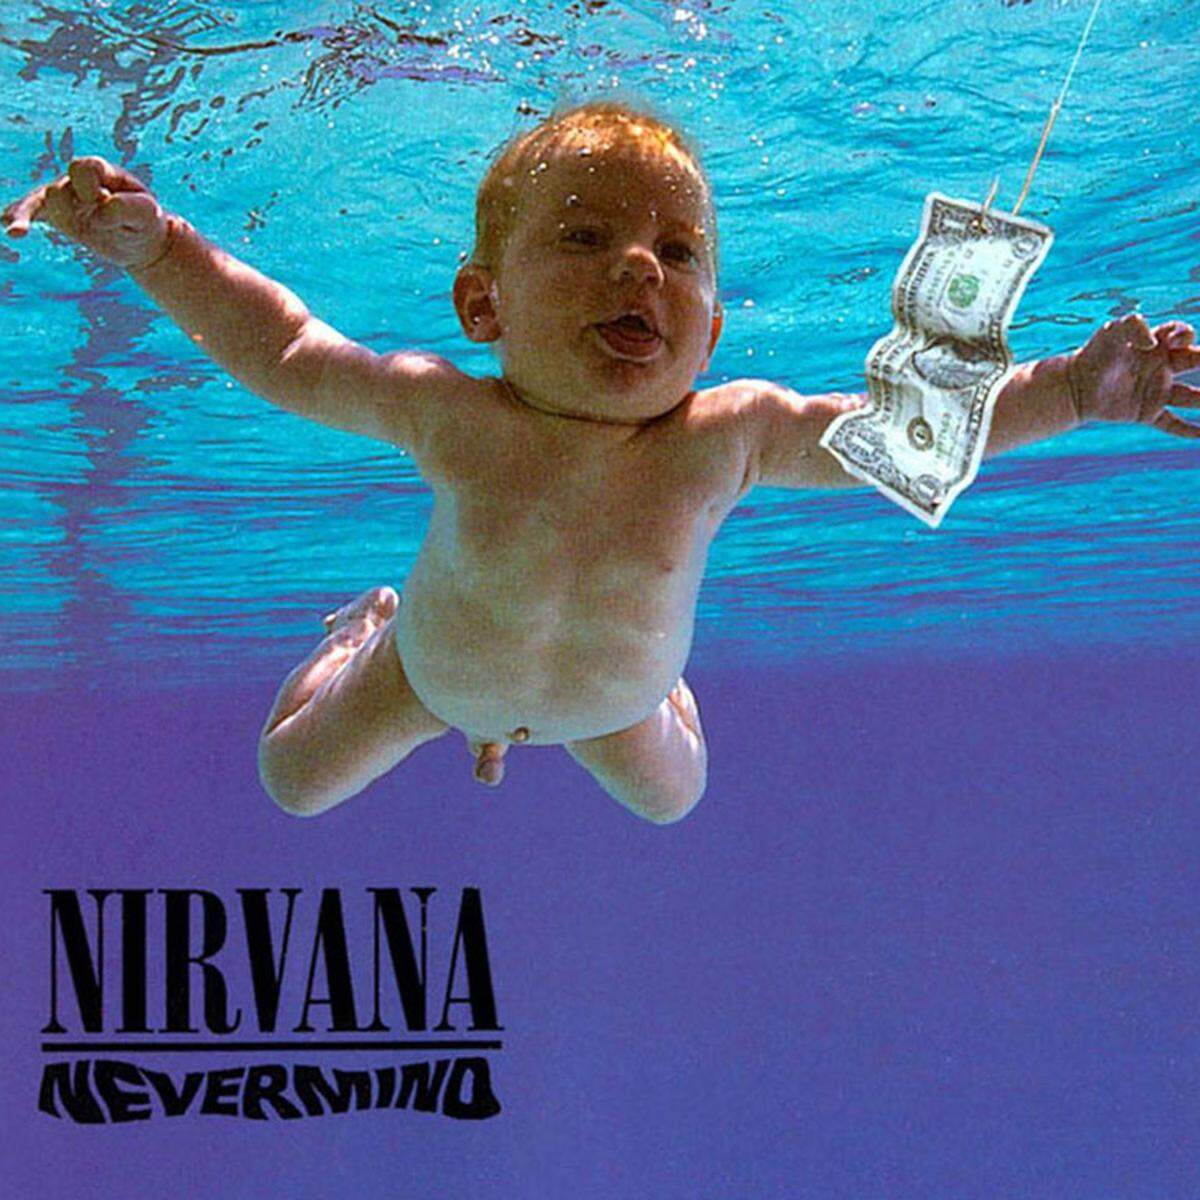 20 Jahre nach dem Tod von Kurt Cobain darf man es sich eingestehen. Nirvana waren eine stilprägende Band und "Nevermind" (1991) ihr wichtigtes Album.